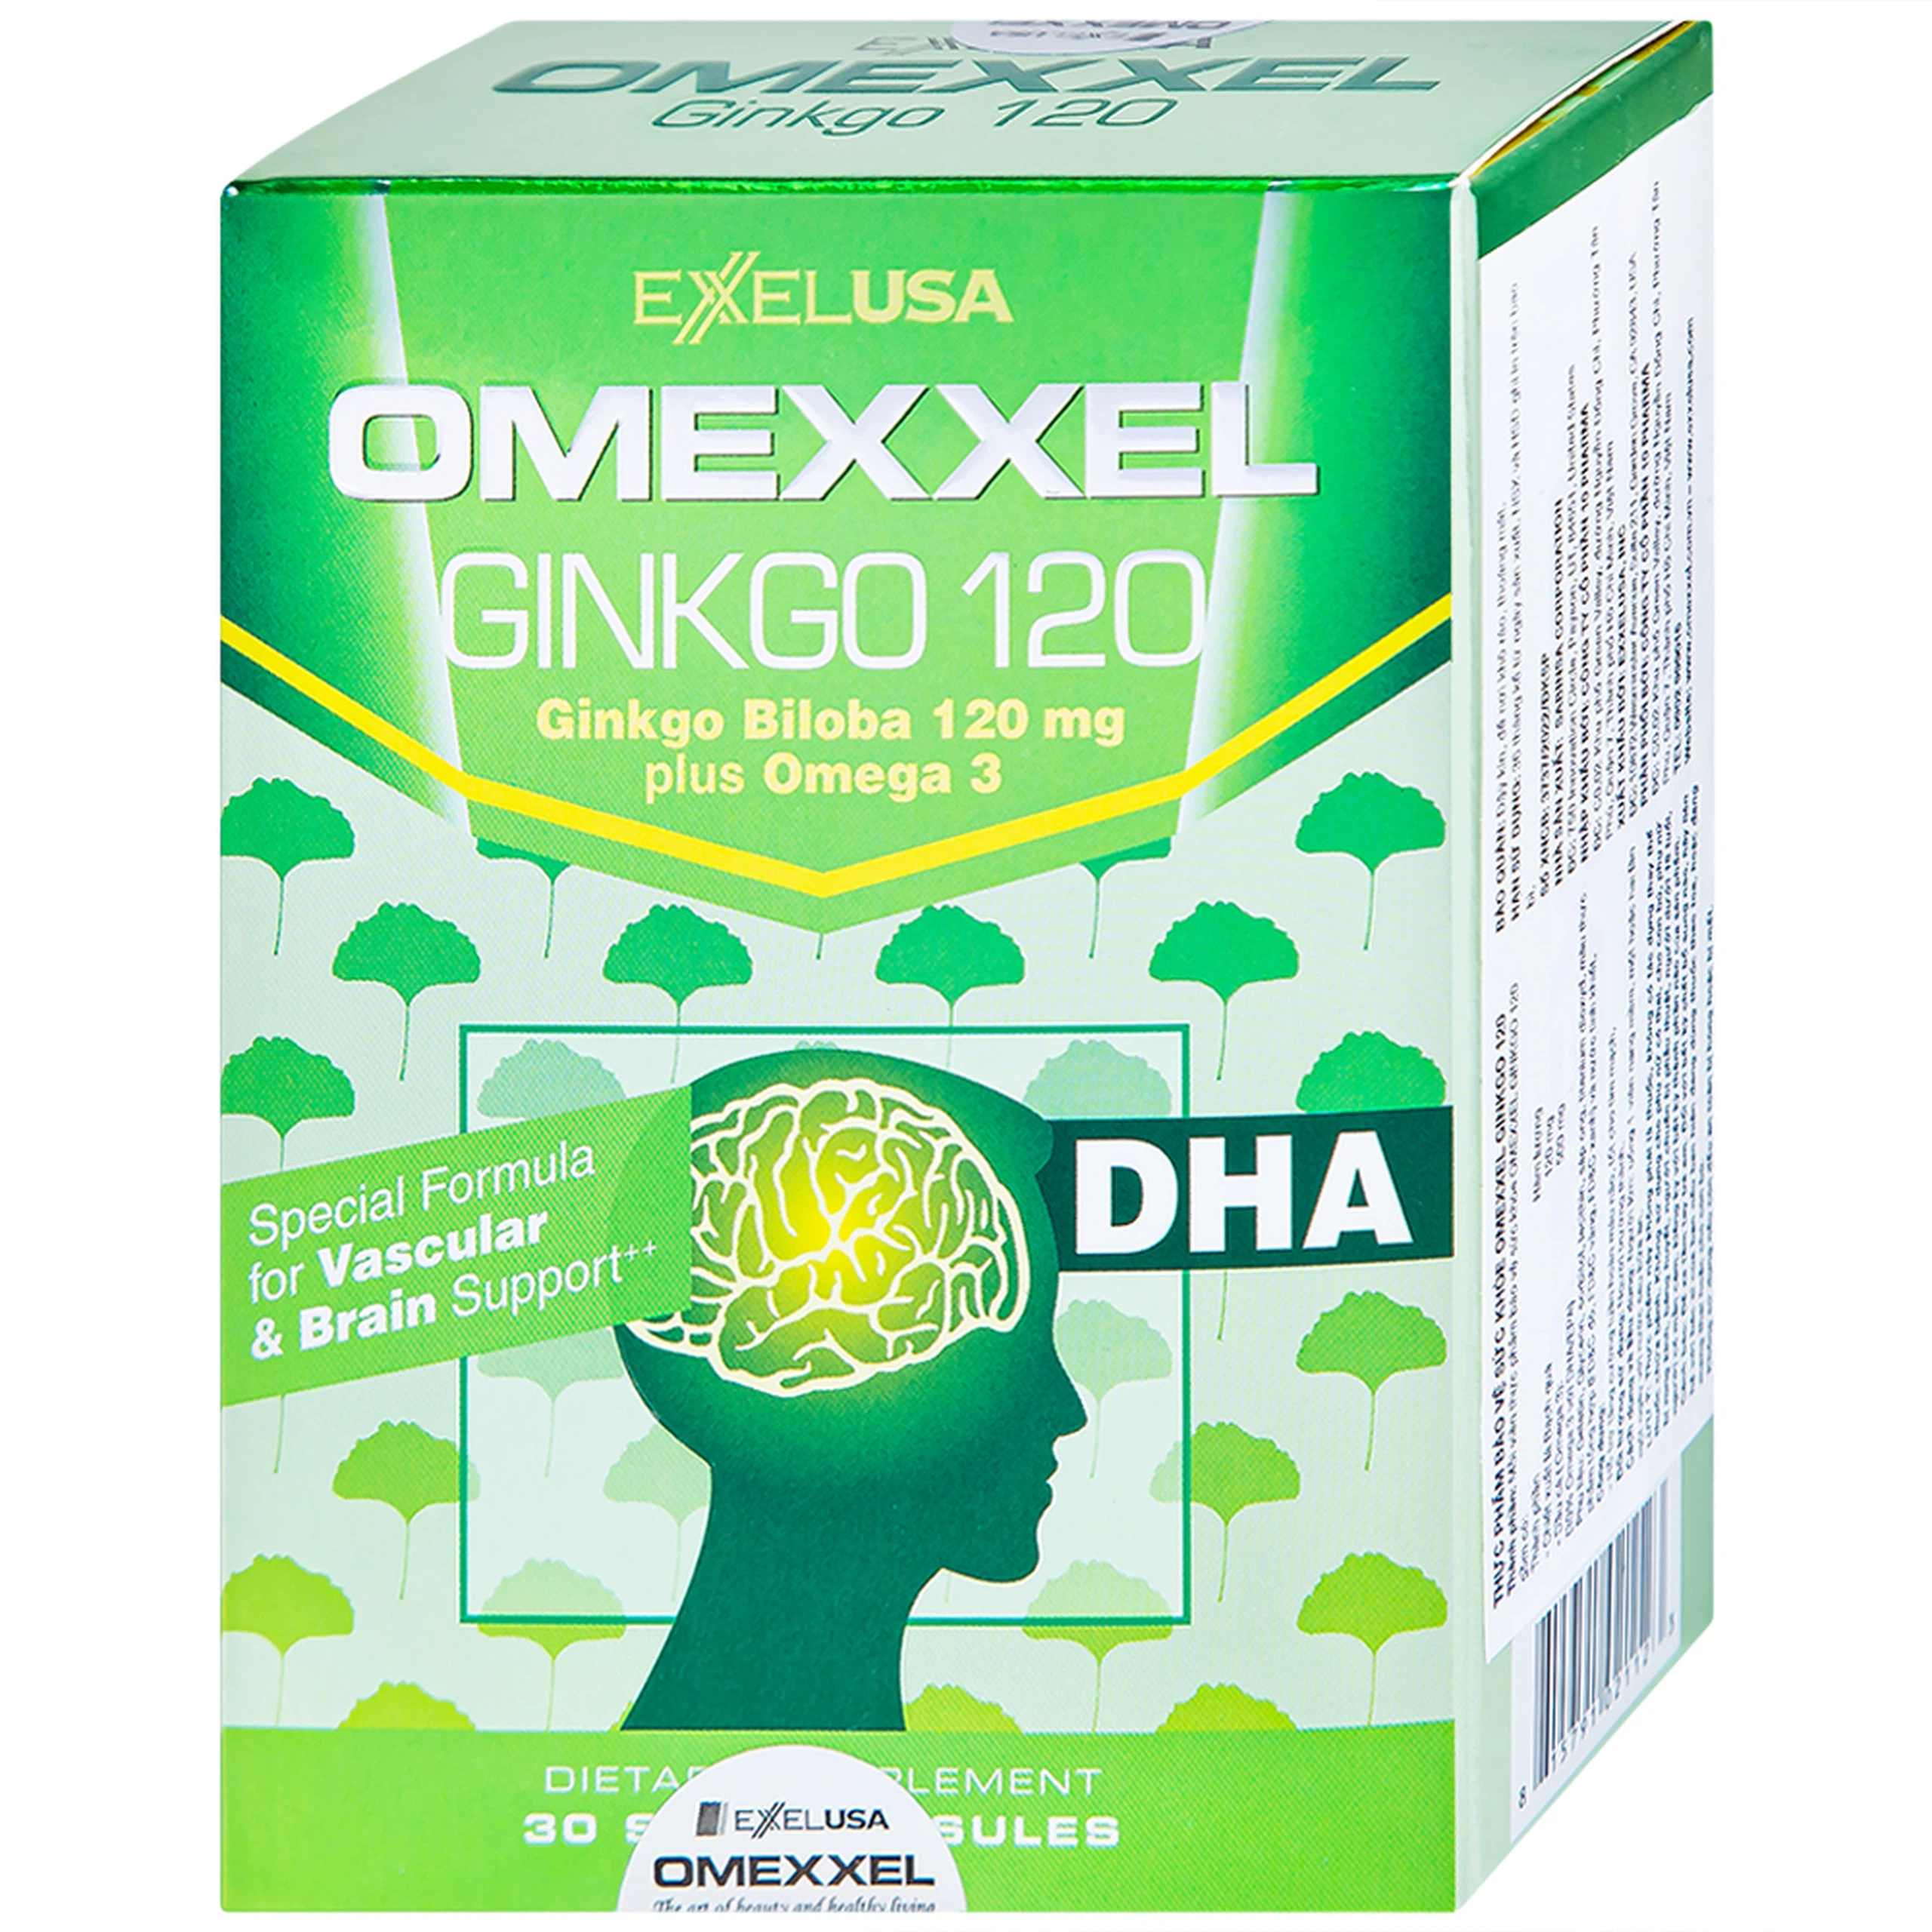 Viên uống Omexxel Ginkgo 120 Excelife hỗ trợ tăng cường tuần hoàn máu não, tốt cho tim mạch (2 vỉ x 15 viên)